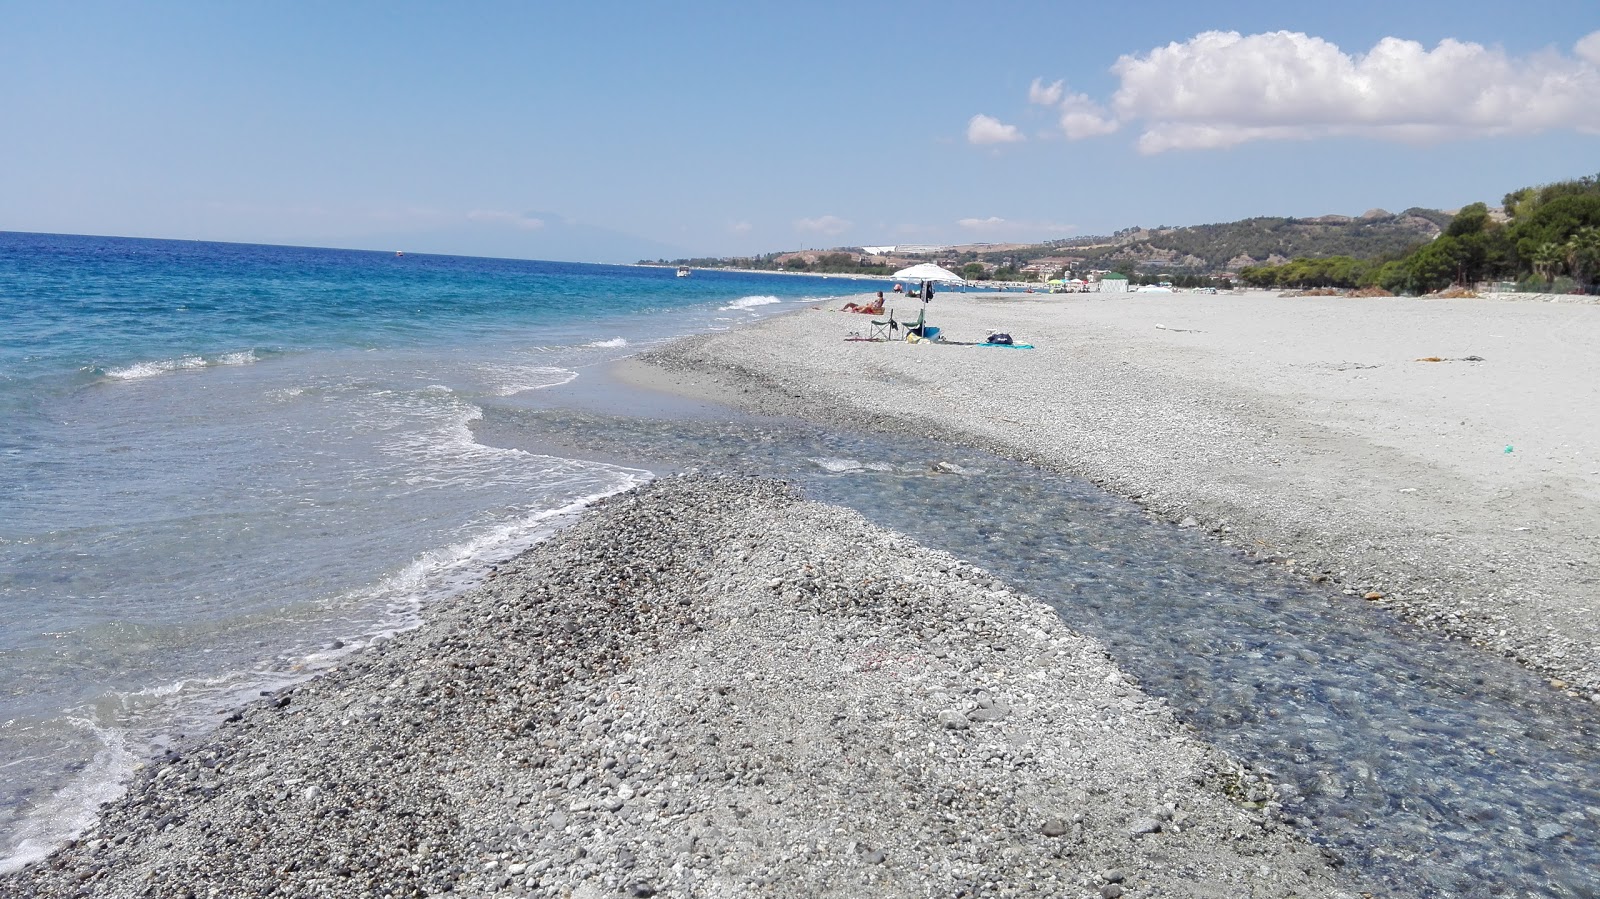 Spiaggia Cundufuri Marina'in fotoğrafı gri ince çakıl taş yüzey ile